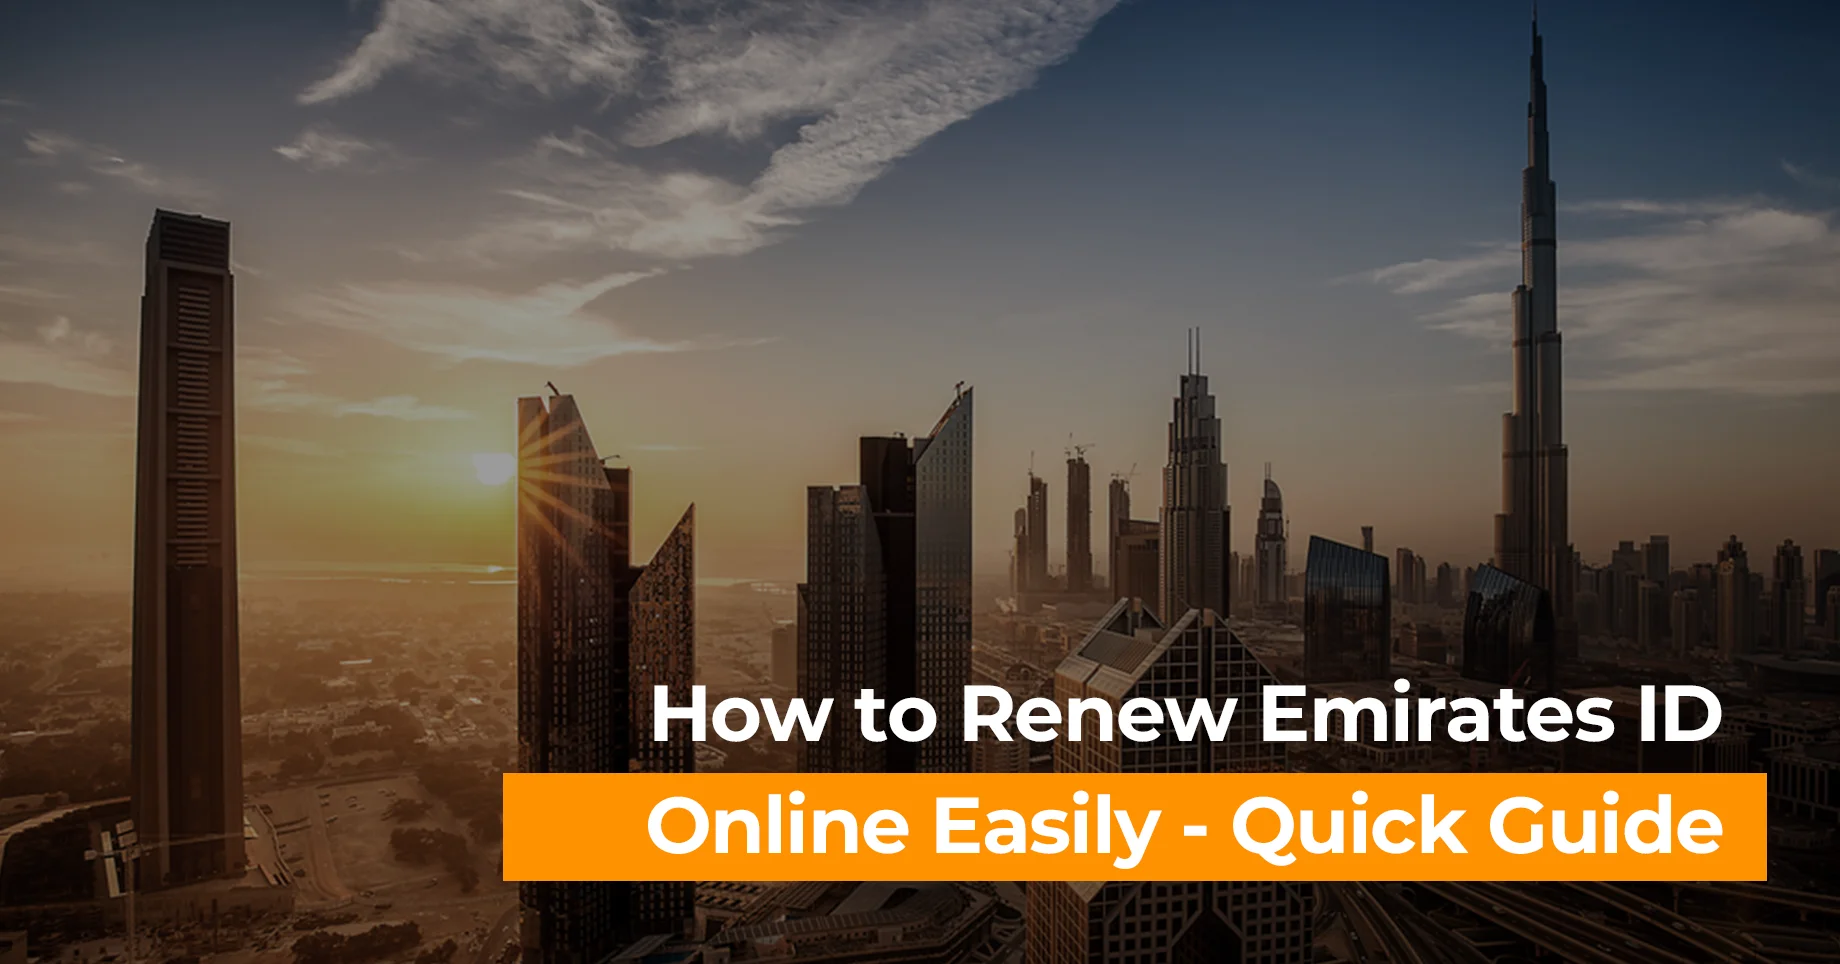 How to renew emirates id online